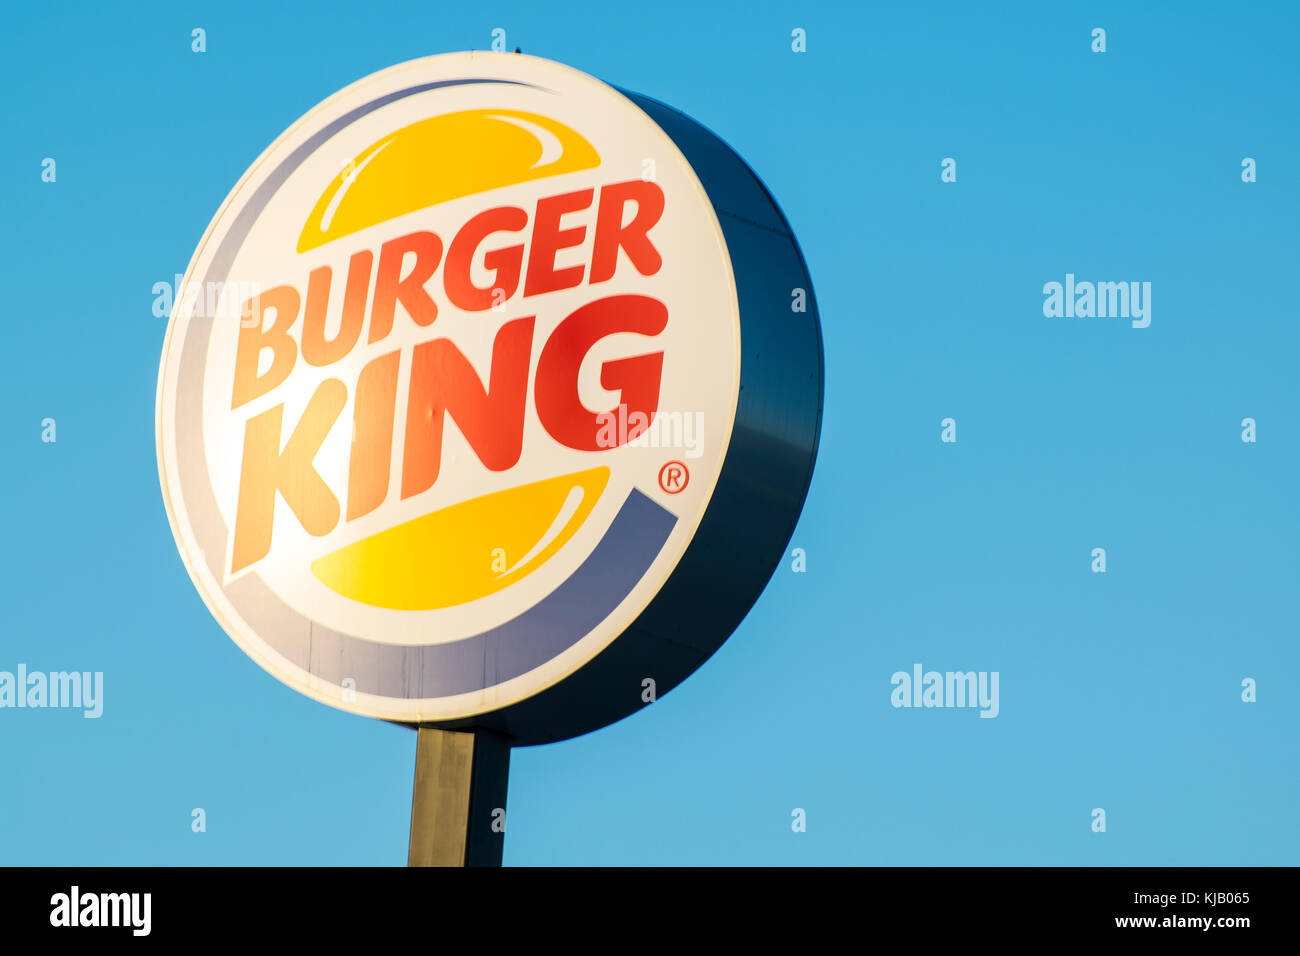 Burger King signer contre ciel bleu, Espagne Banque D'Images